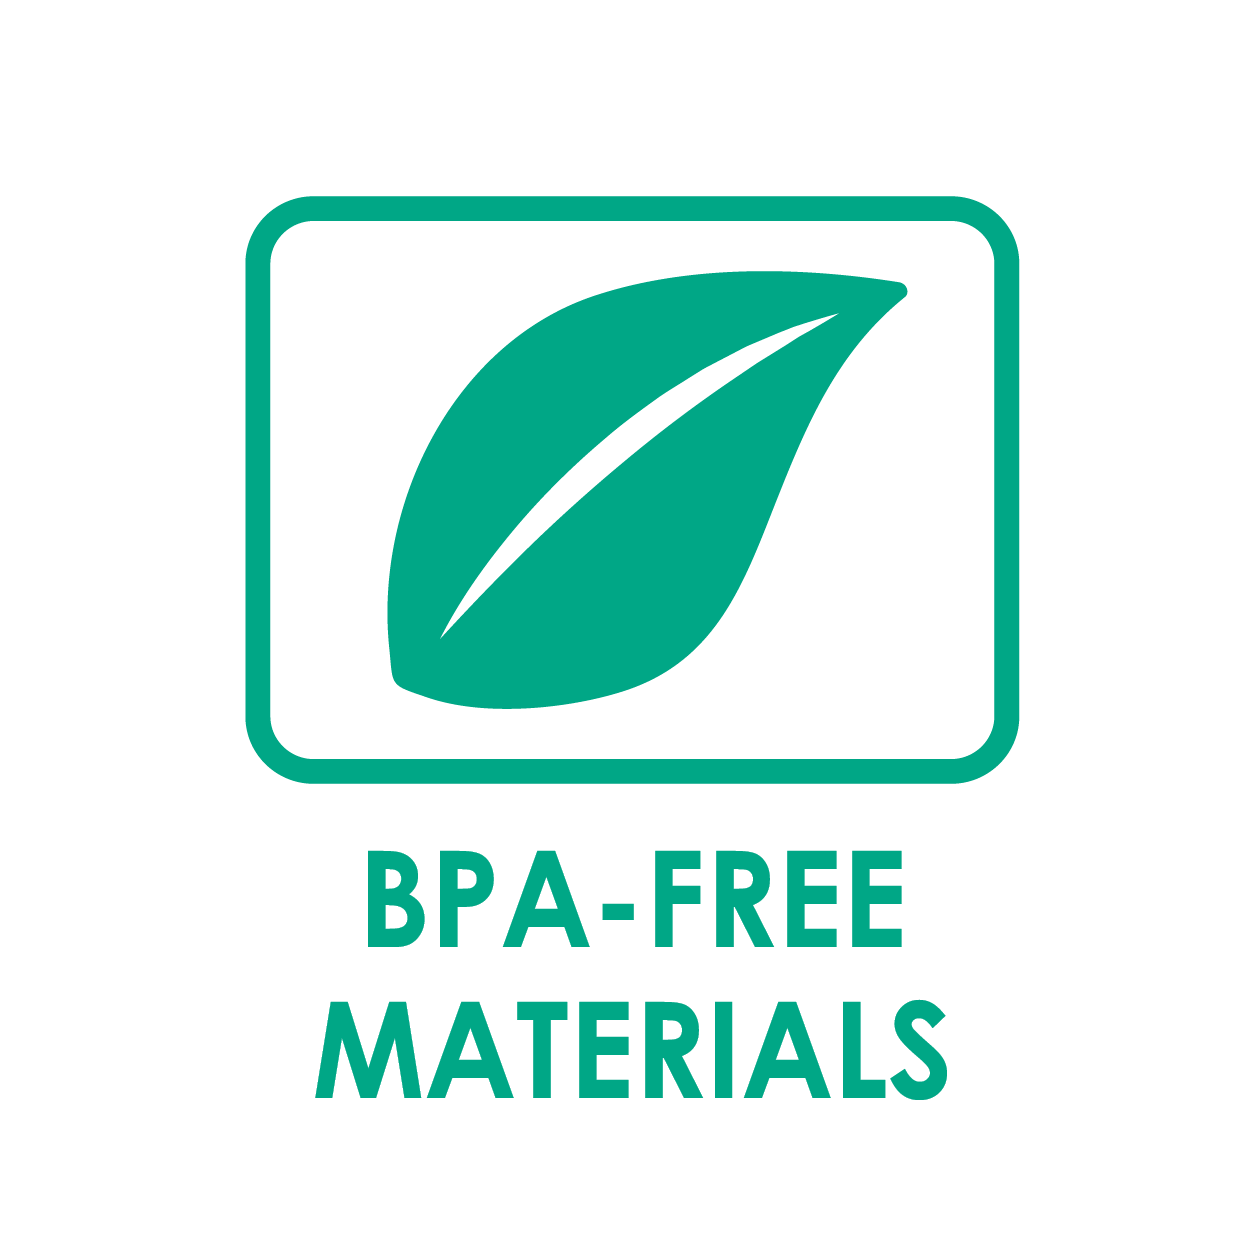 BPA-free materials